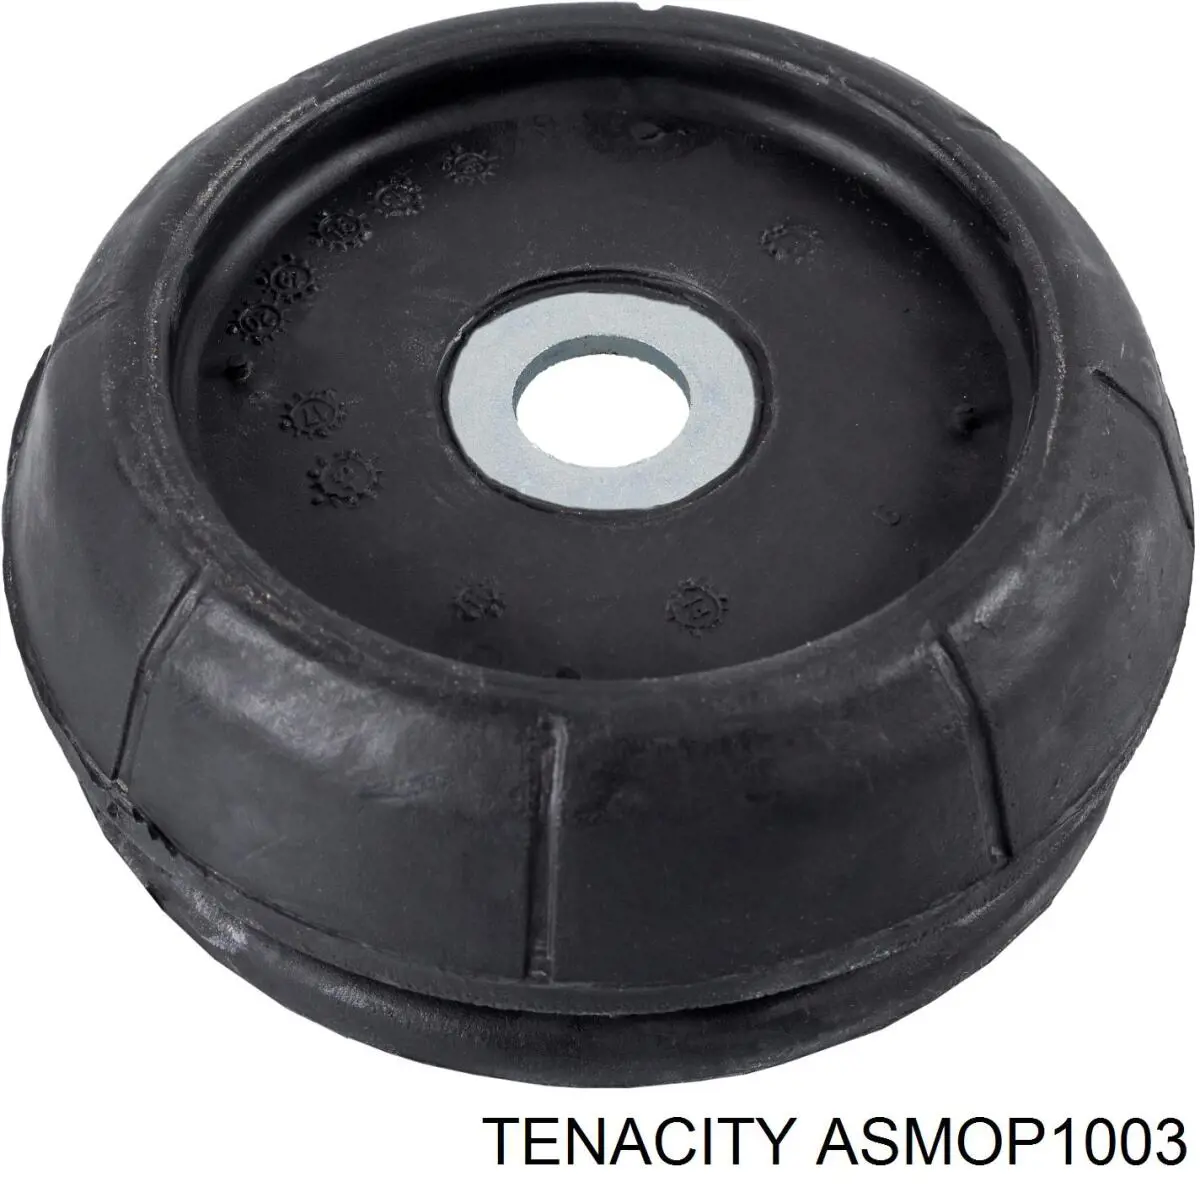 ASMOP1003 Tenacity soporte amortiguador delantero